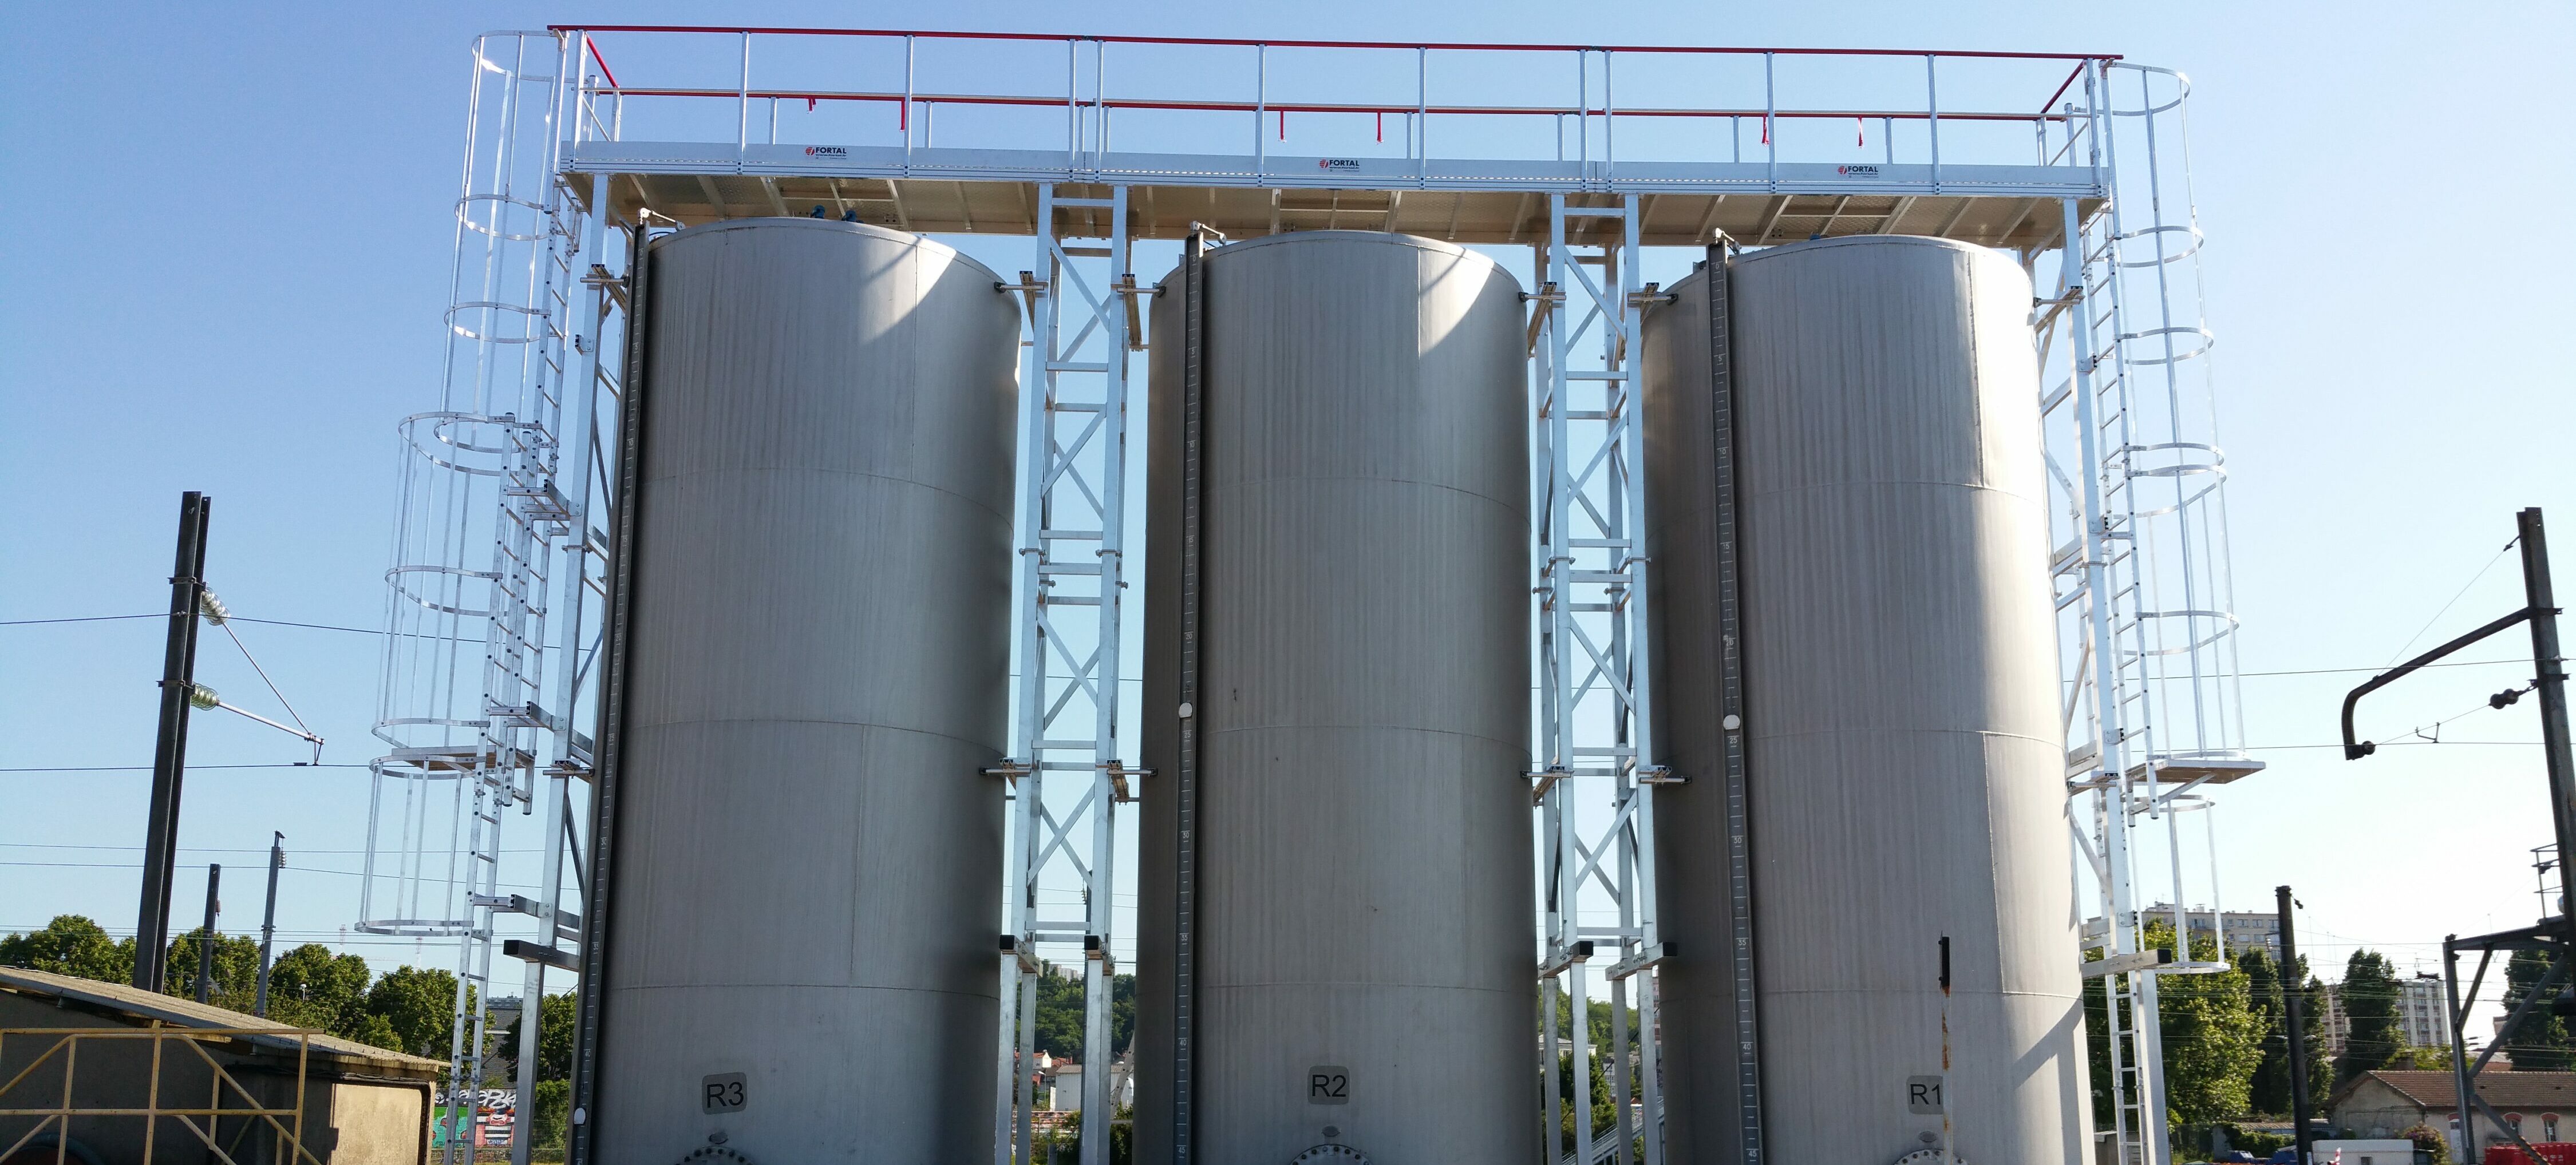 échelles à crinoline avec passerelle sur silos pétrochimiques